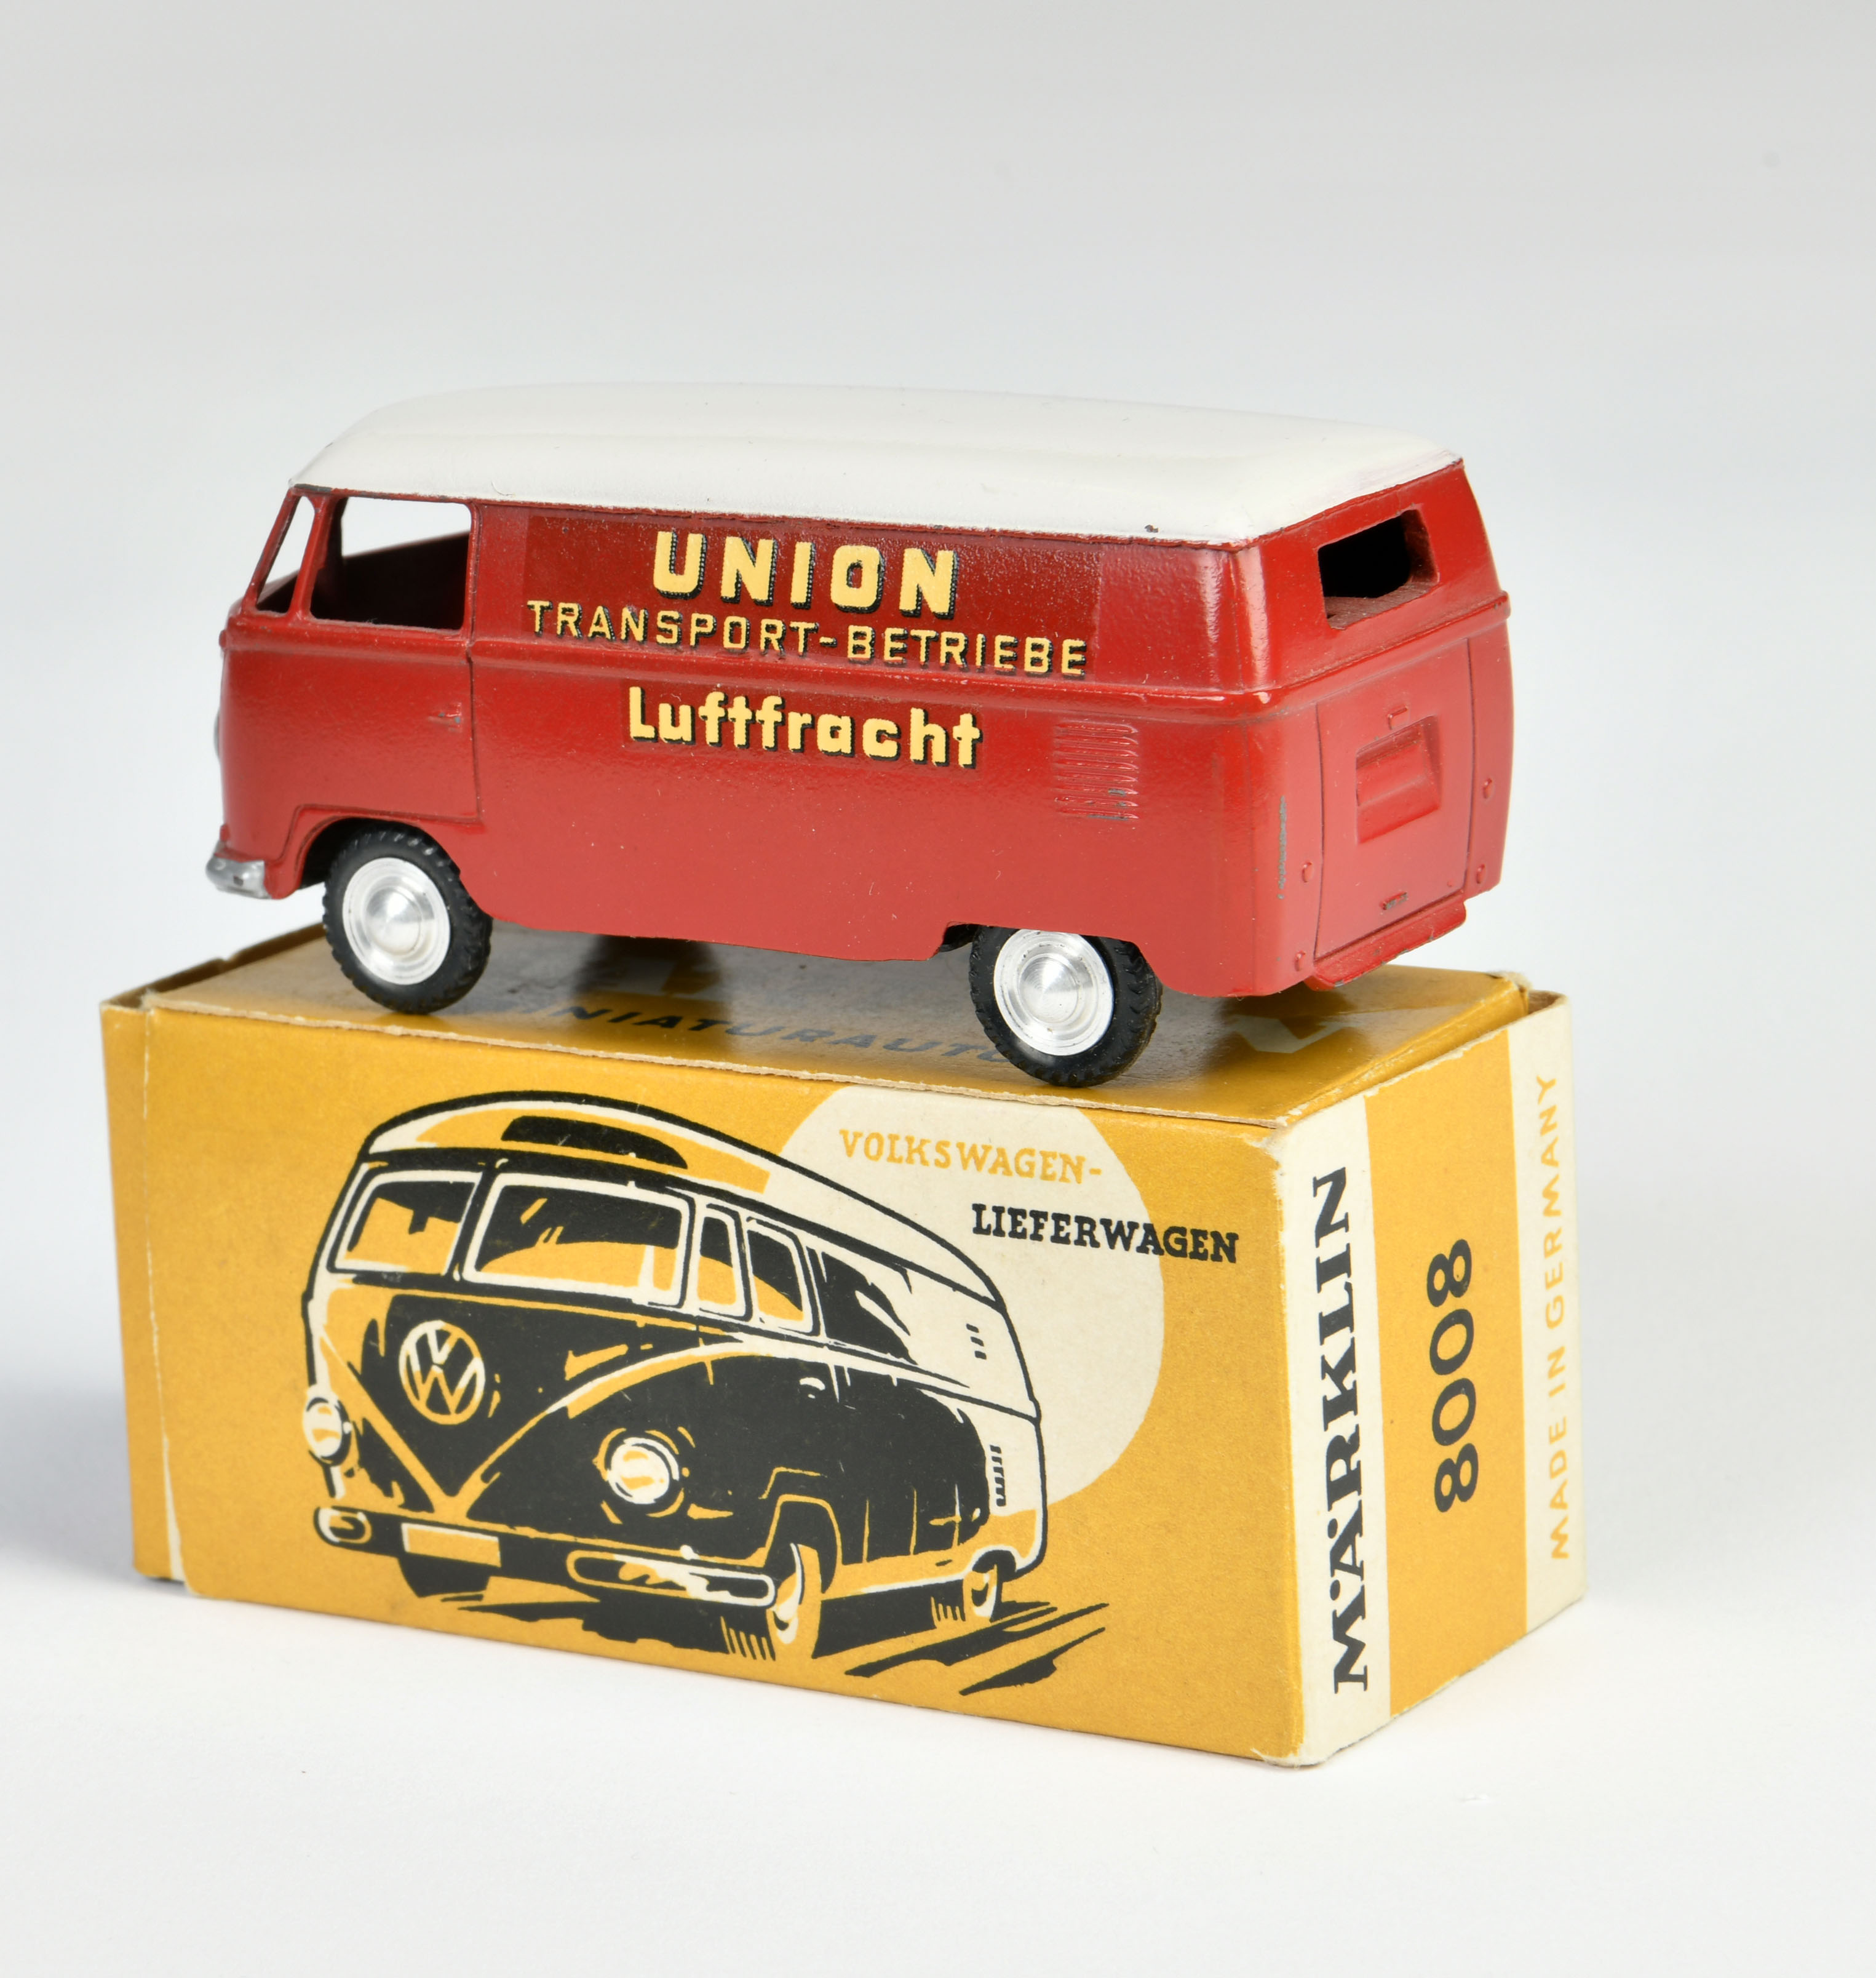 Märklin, VW Bus advertising model "Union Transport Betriebe Luftfracht", Germany, 1:43, diecast, box - Image 2 of 2